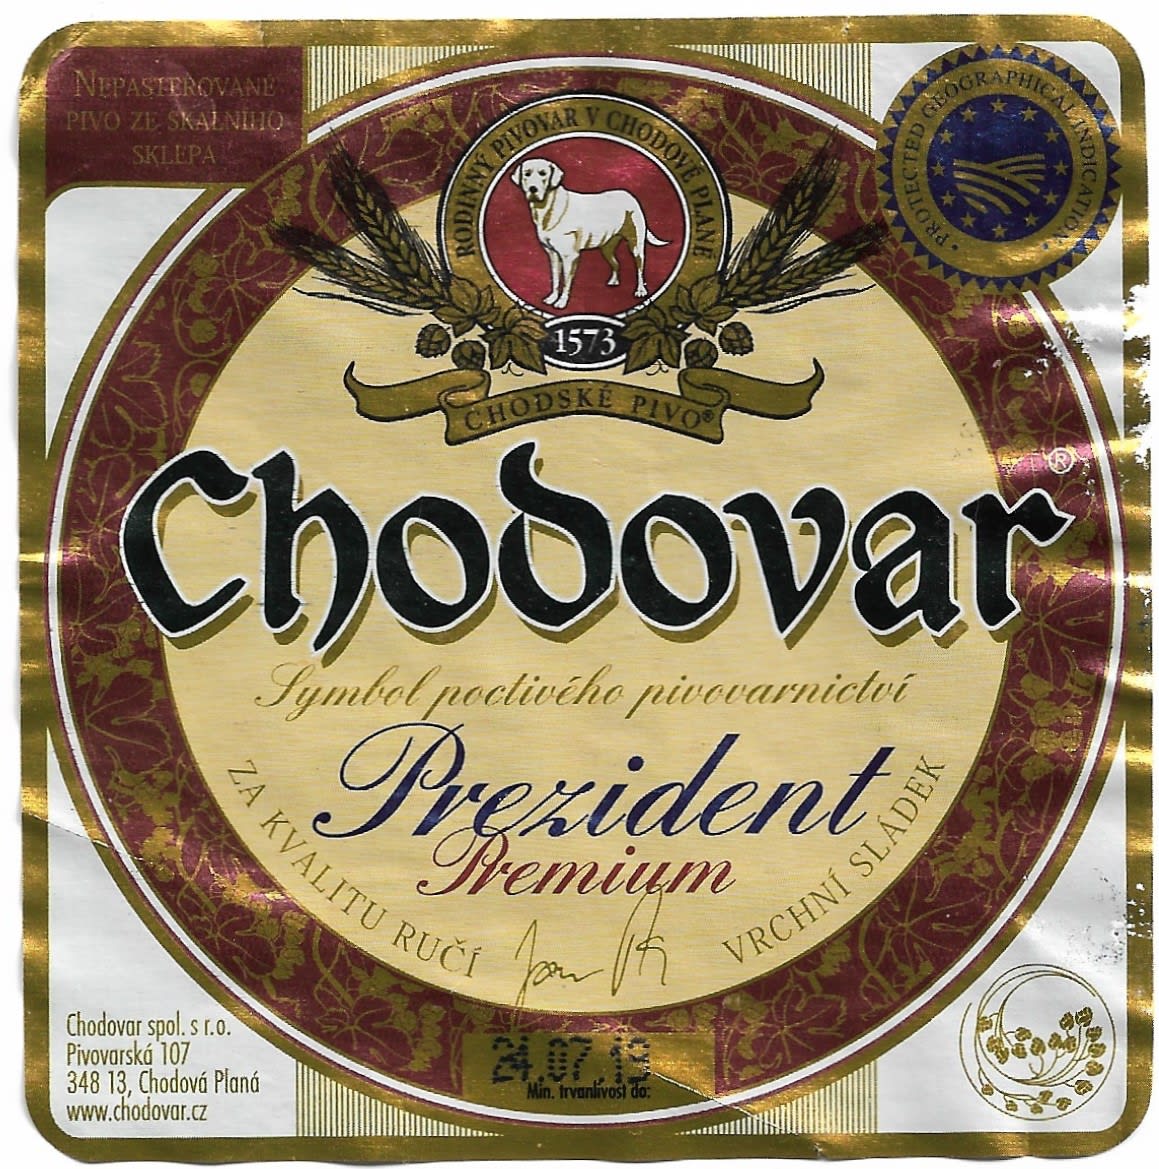 Chodovar Prezident Premium